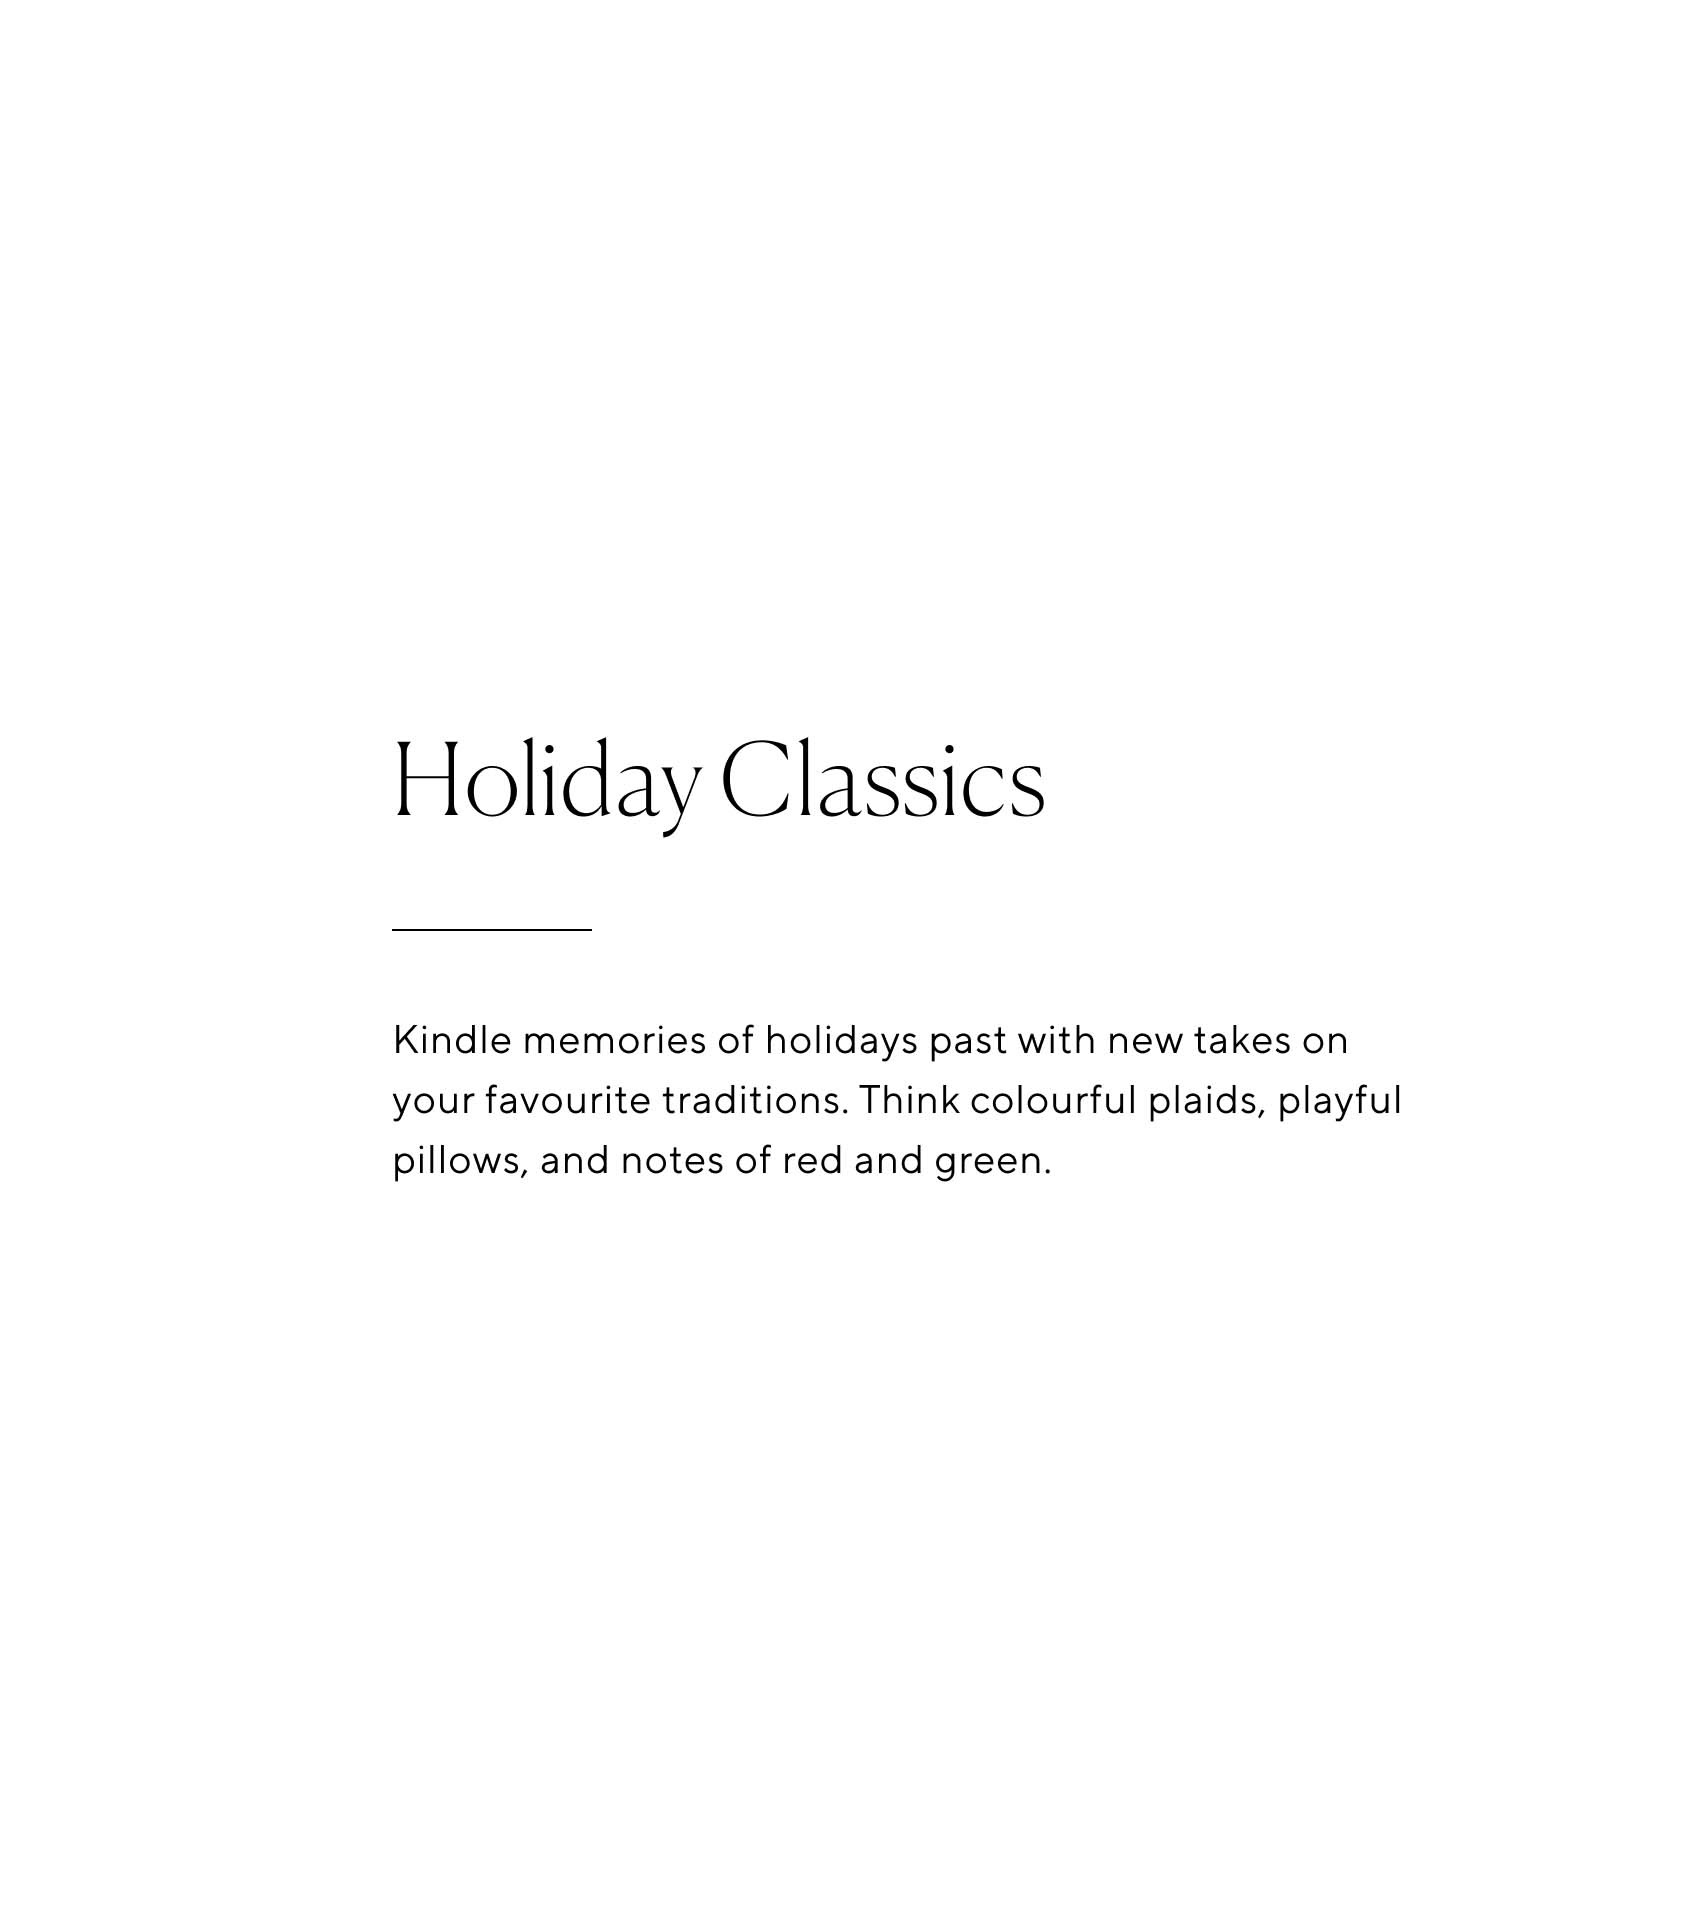 Holiday Classics